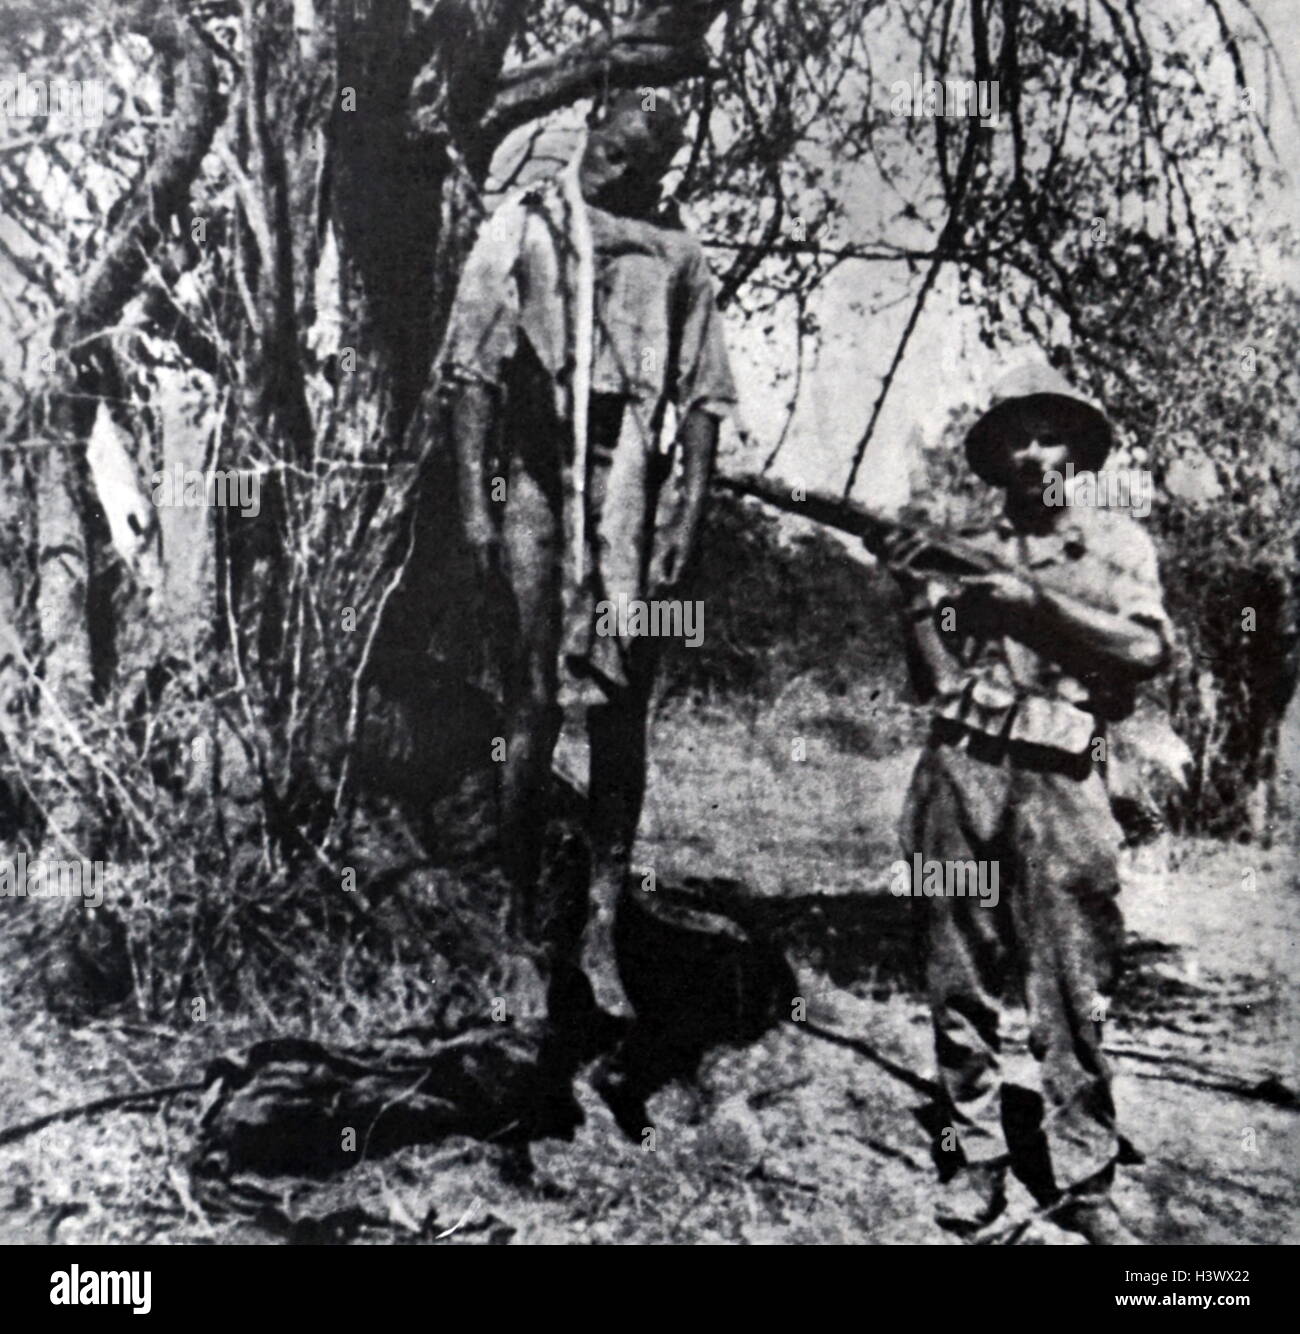 Fotografia di un soldato italiano accanto a un cadavere appeso durante la caduta di Abissinia. In data xx secolo Foto Stock